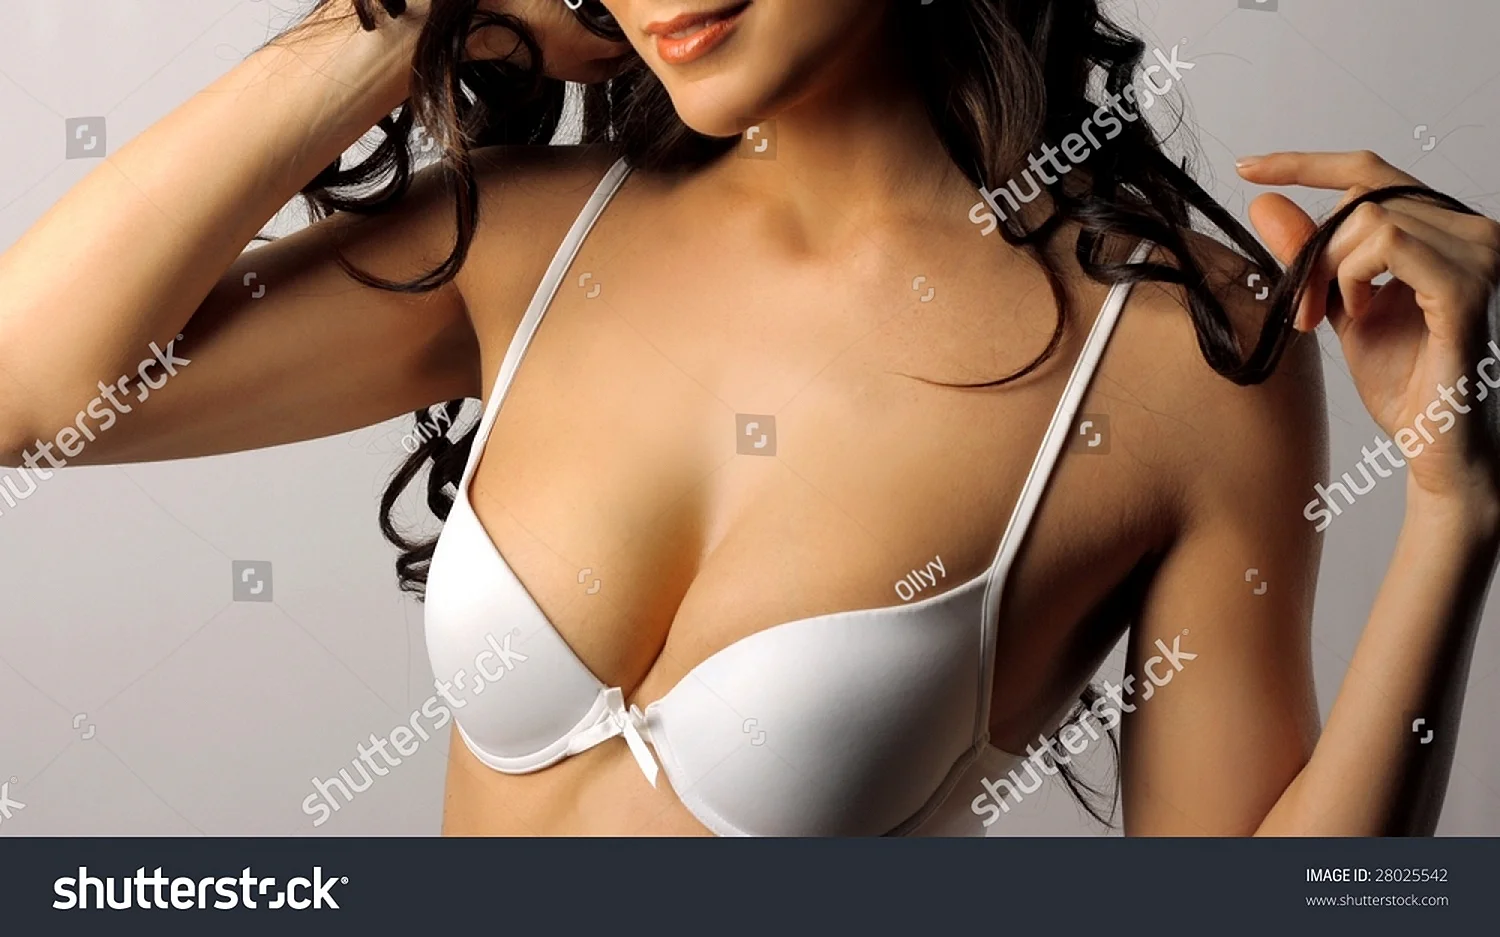 Красивая женская грудь 3 размер